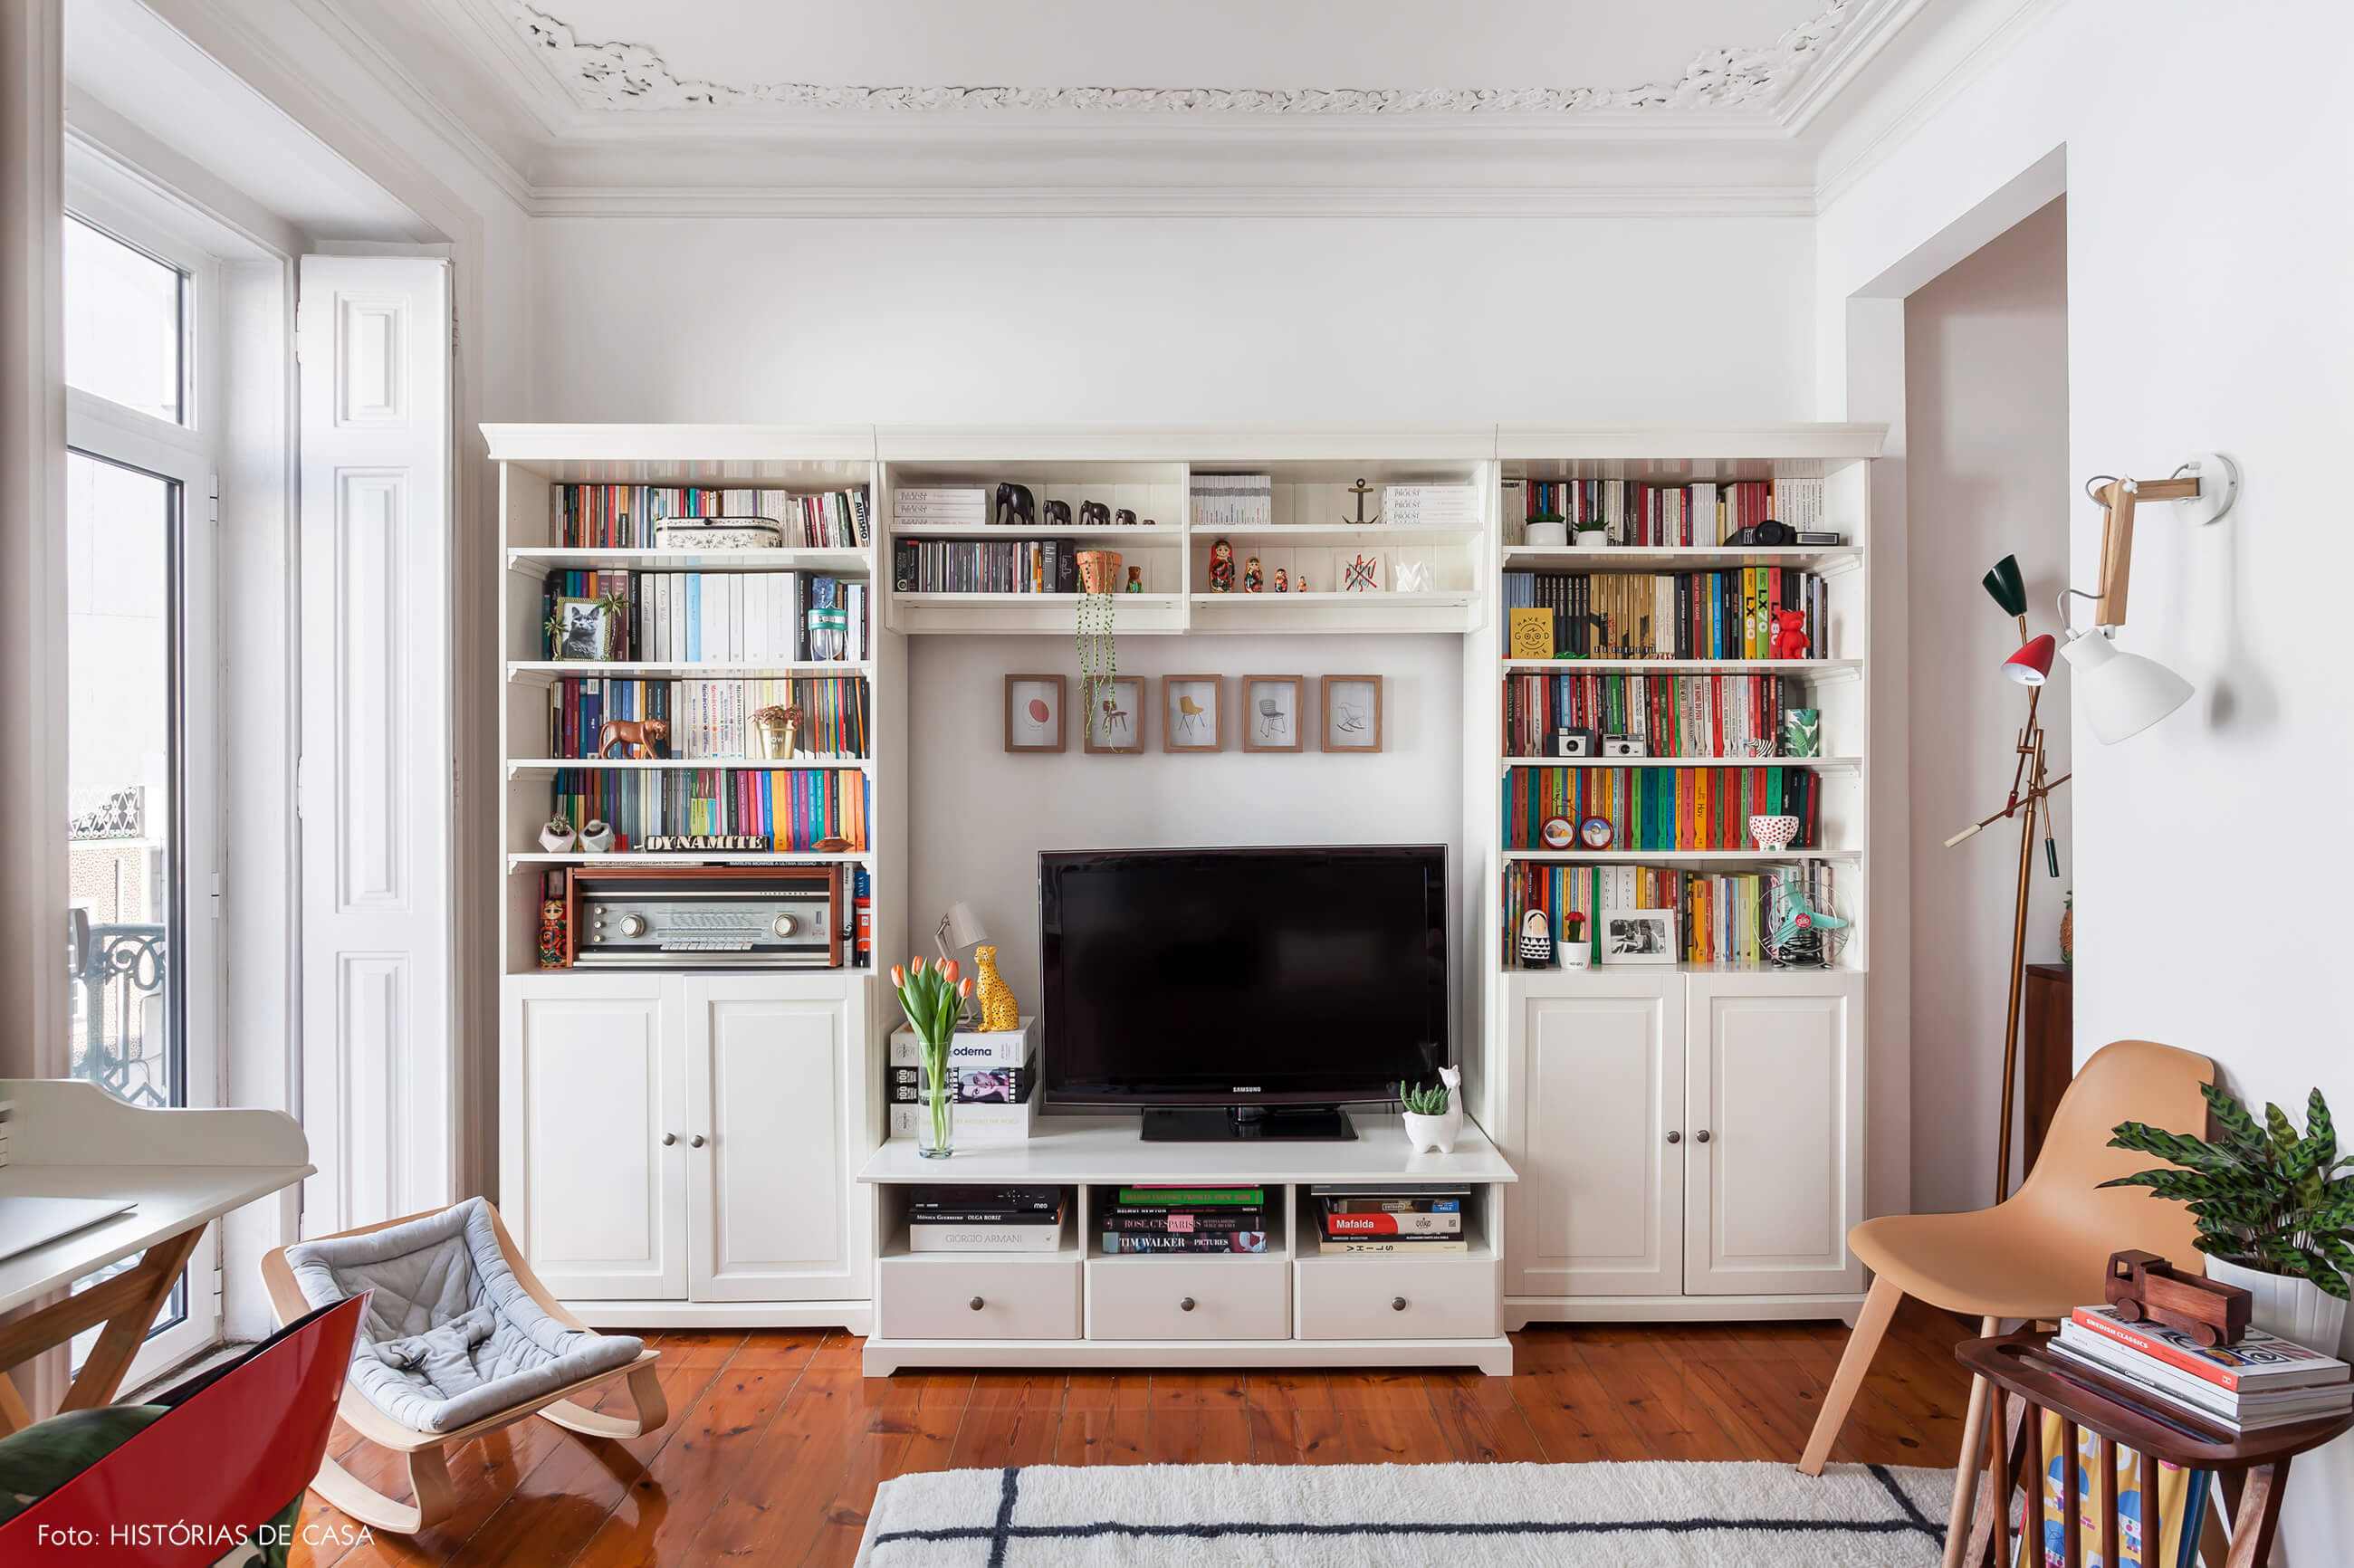 Apartamento em Portugal, sala com estantes ao redor da televisão